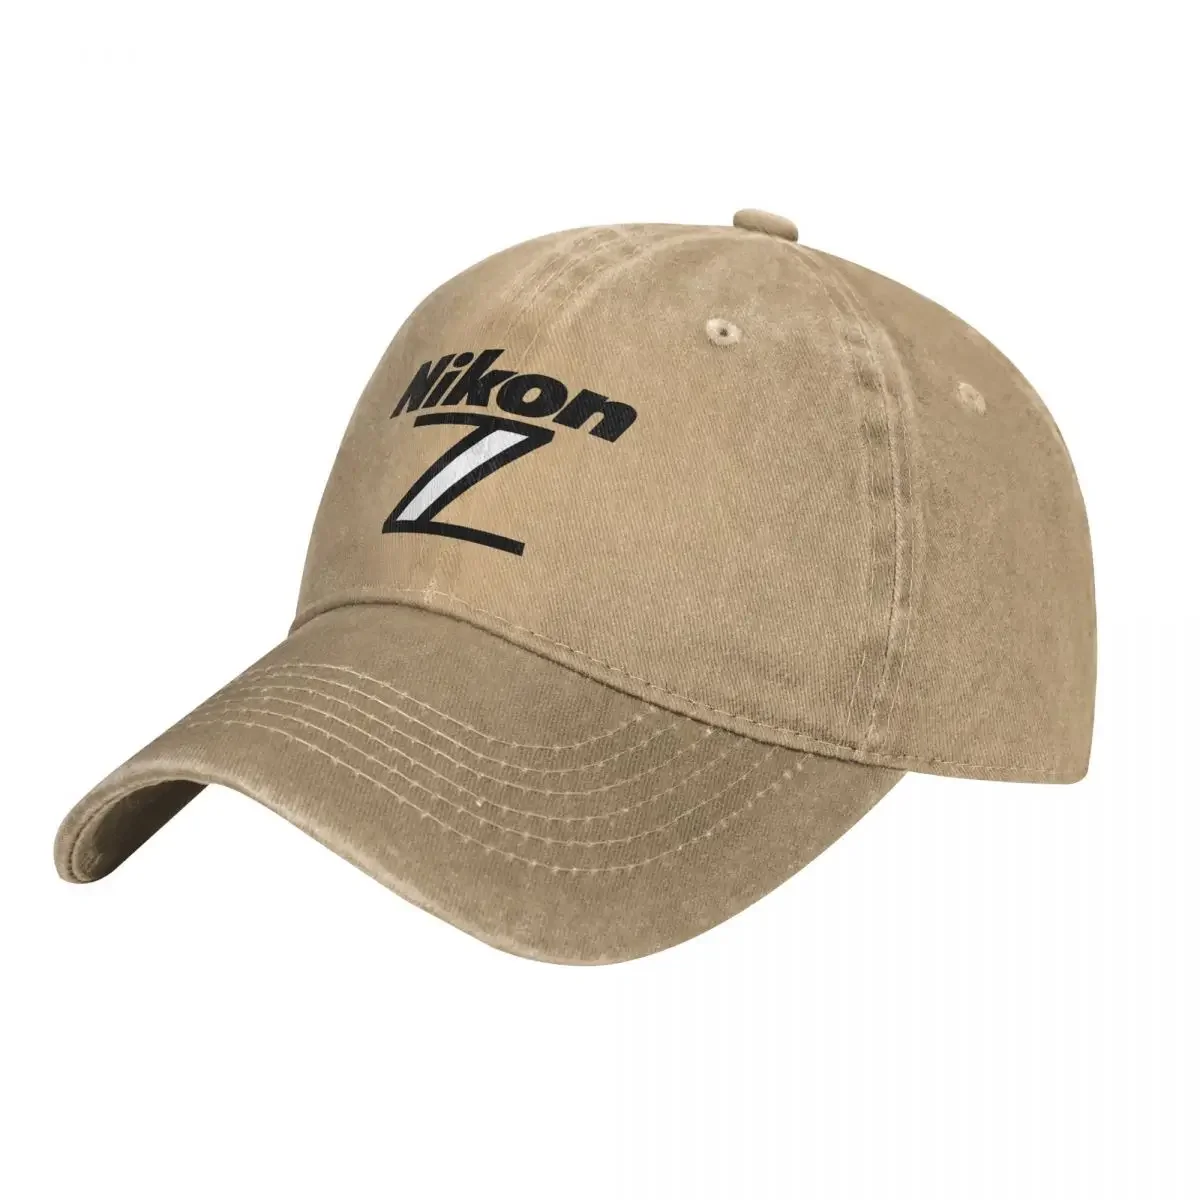 

Nikon Z Symbol Ковбойская шапка мужская бейсбольная Кепка бейсболки для мужчин и женщин, теплые мужские кепки с козырьком для женщин